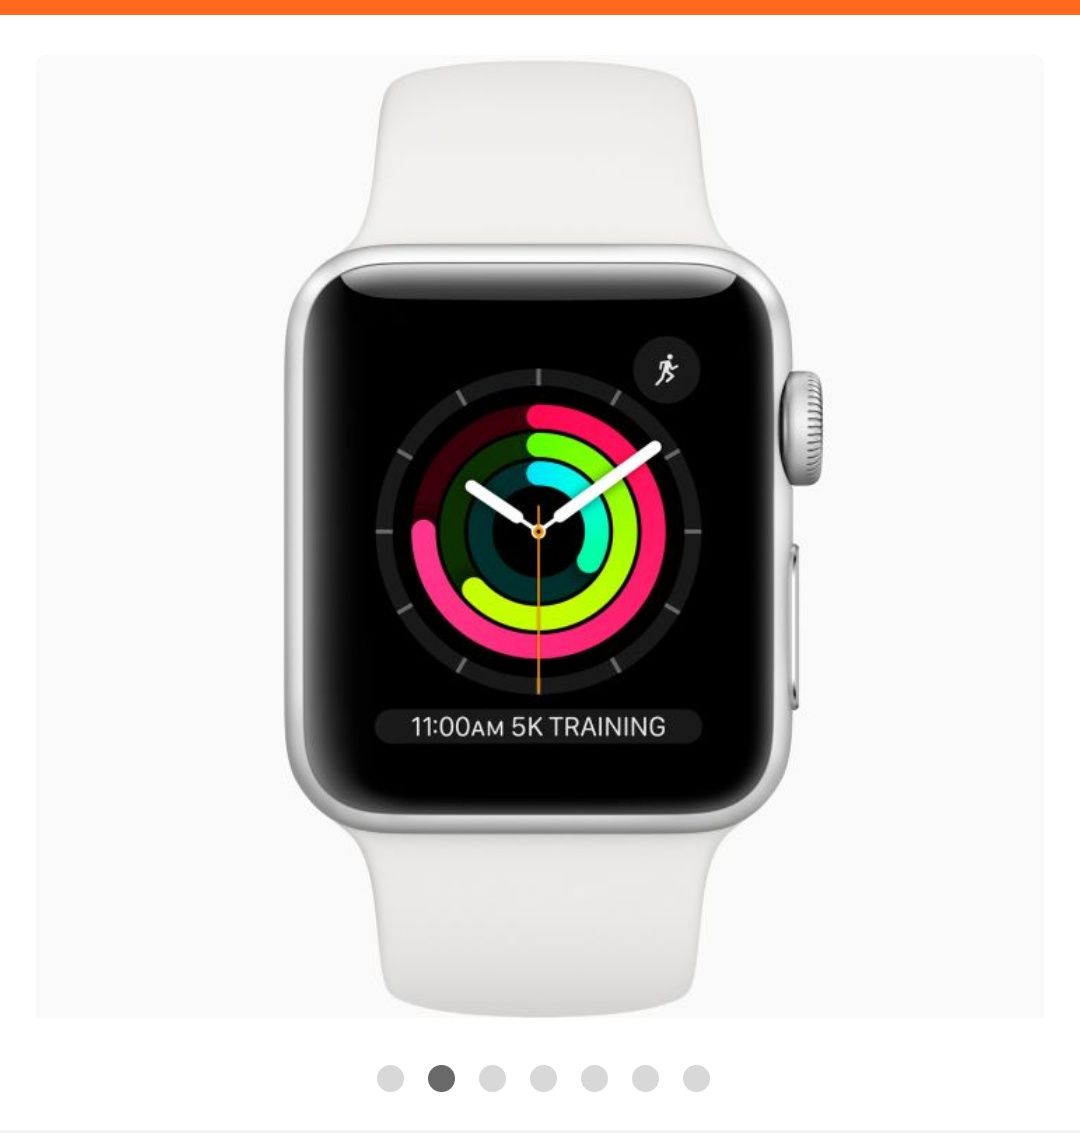 Часы Apple Watch Series 3